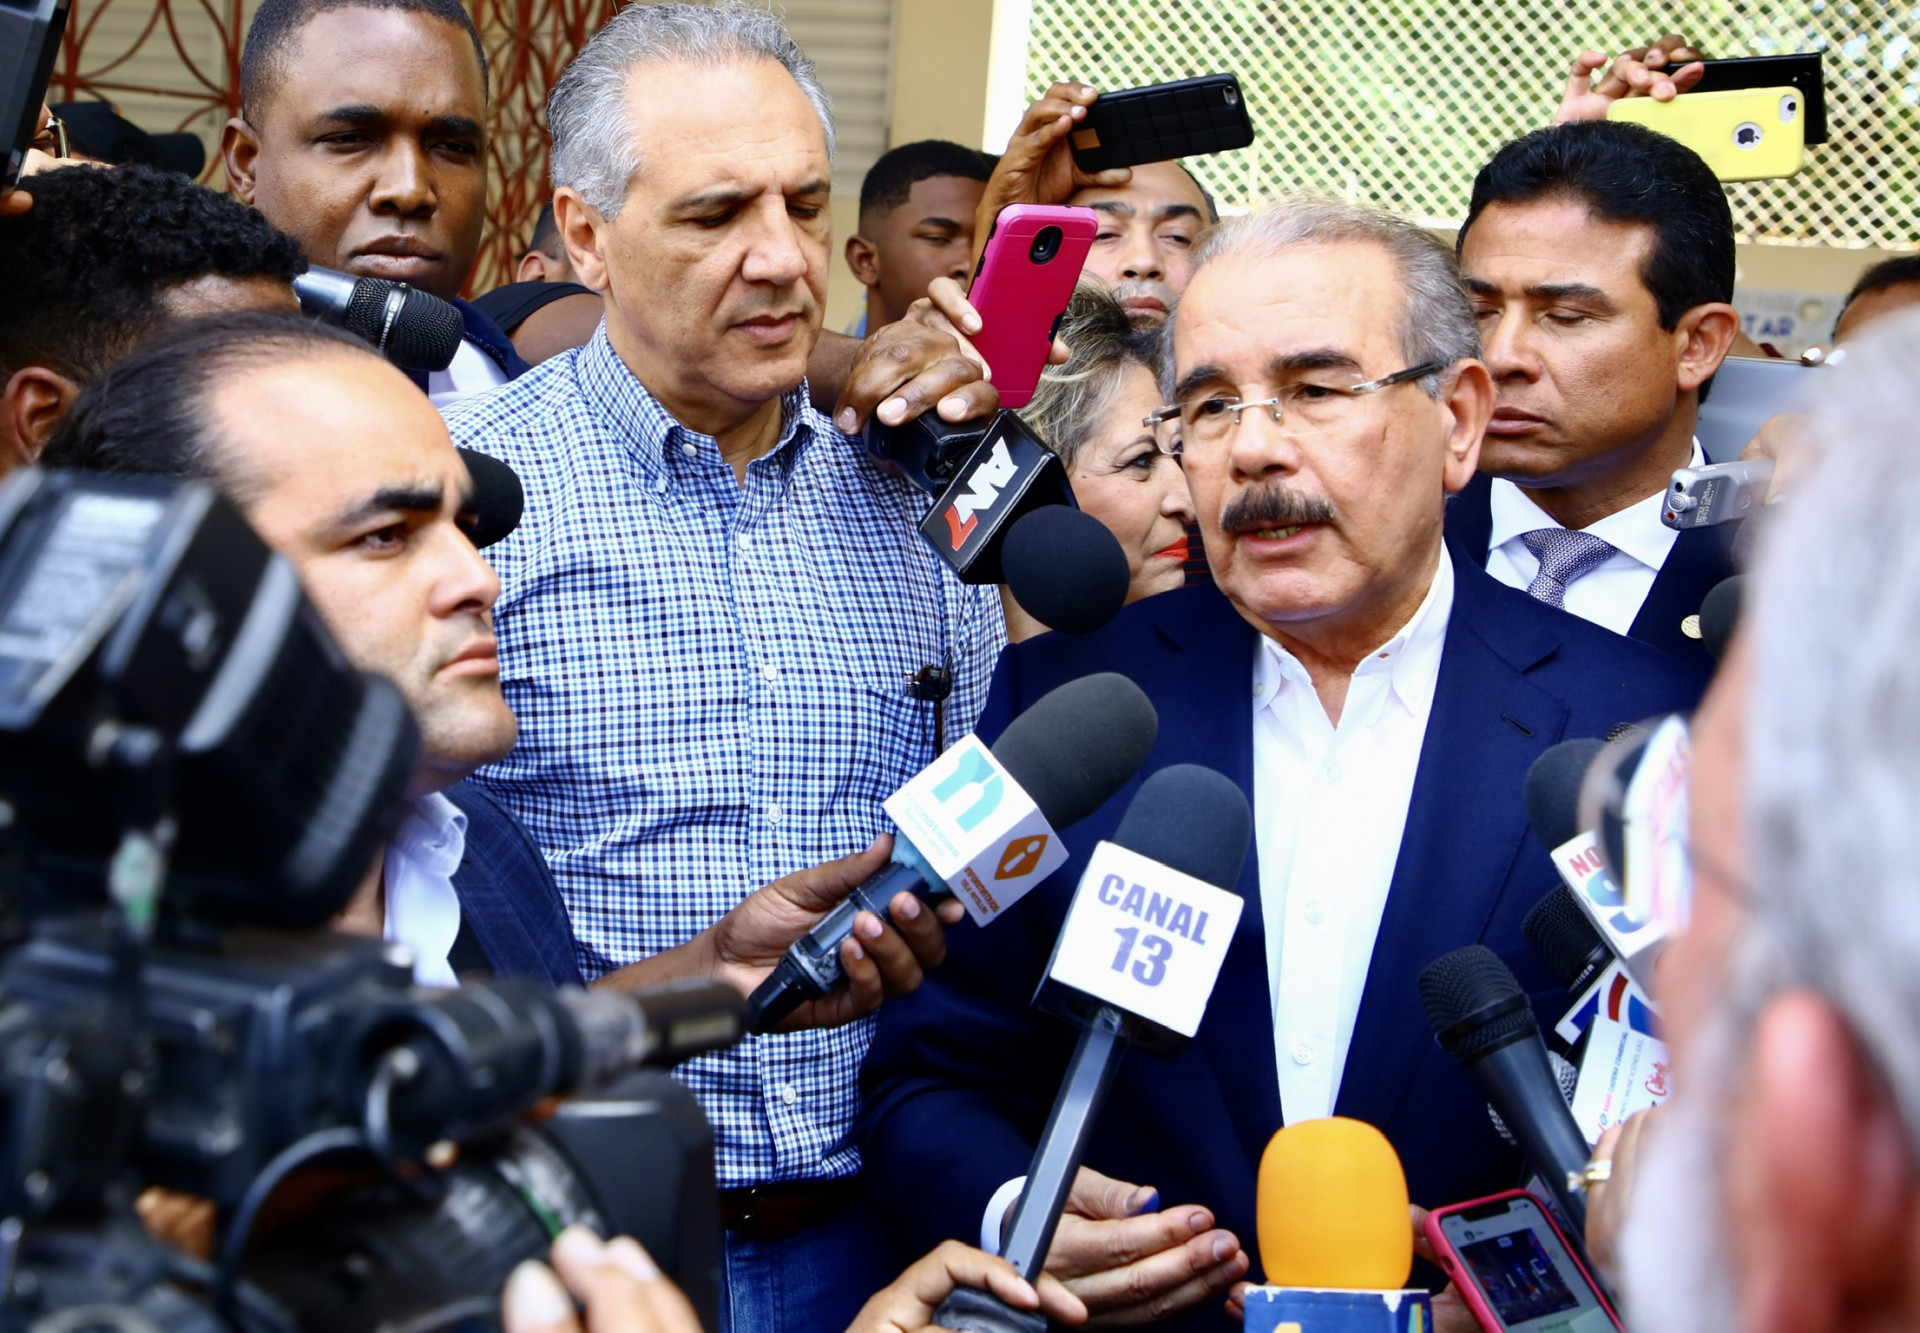 REPÚBLICA DOMINICANA: Ante coronavirus, Danilo Medina anuncia Gobierno adoptará medidas adicionales para proteger aparato productivo y empleos